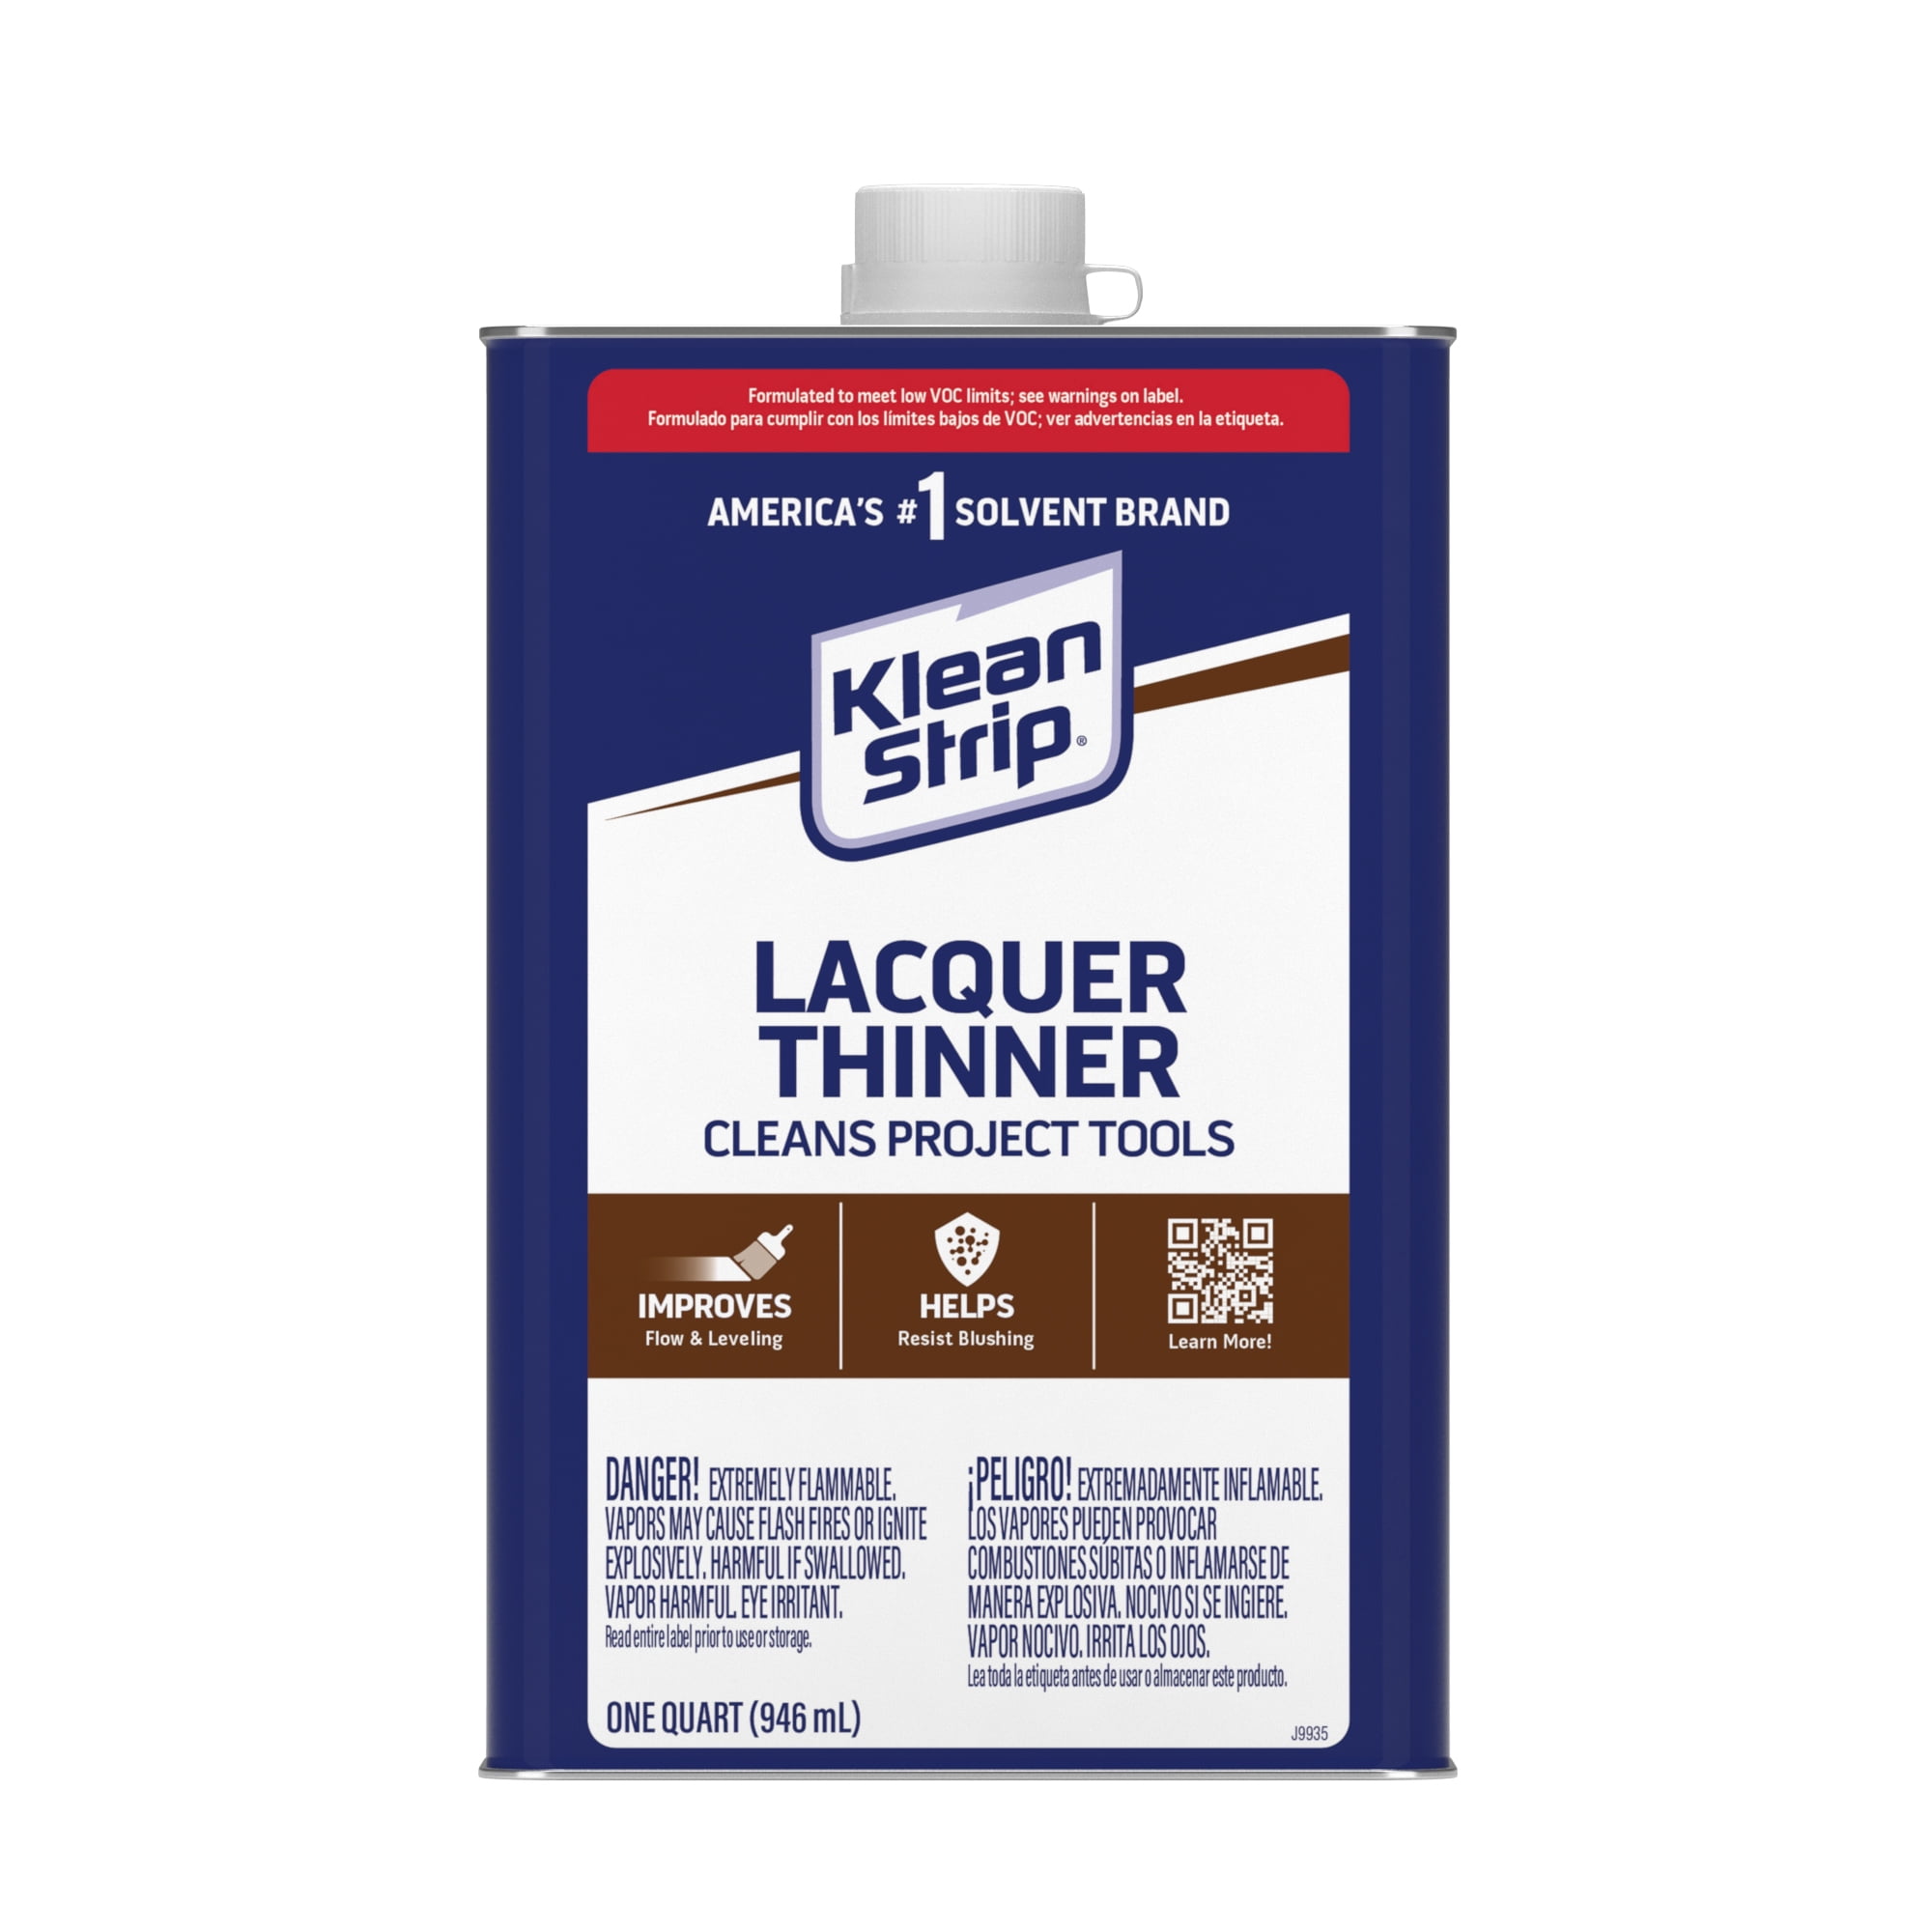 Klean Strip Lacquer Thinner - 1 qt can